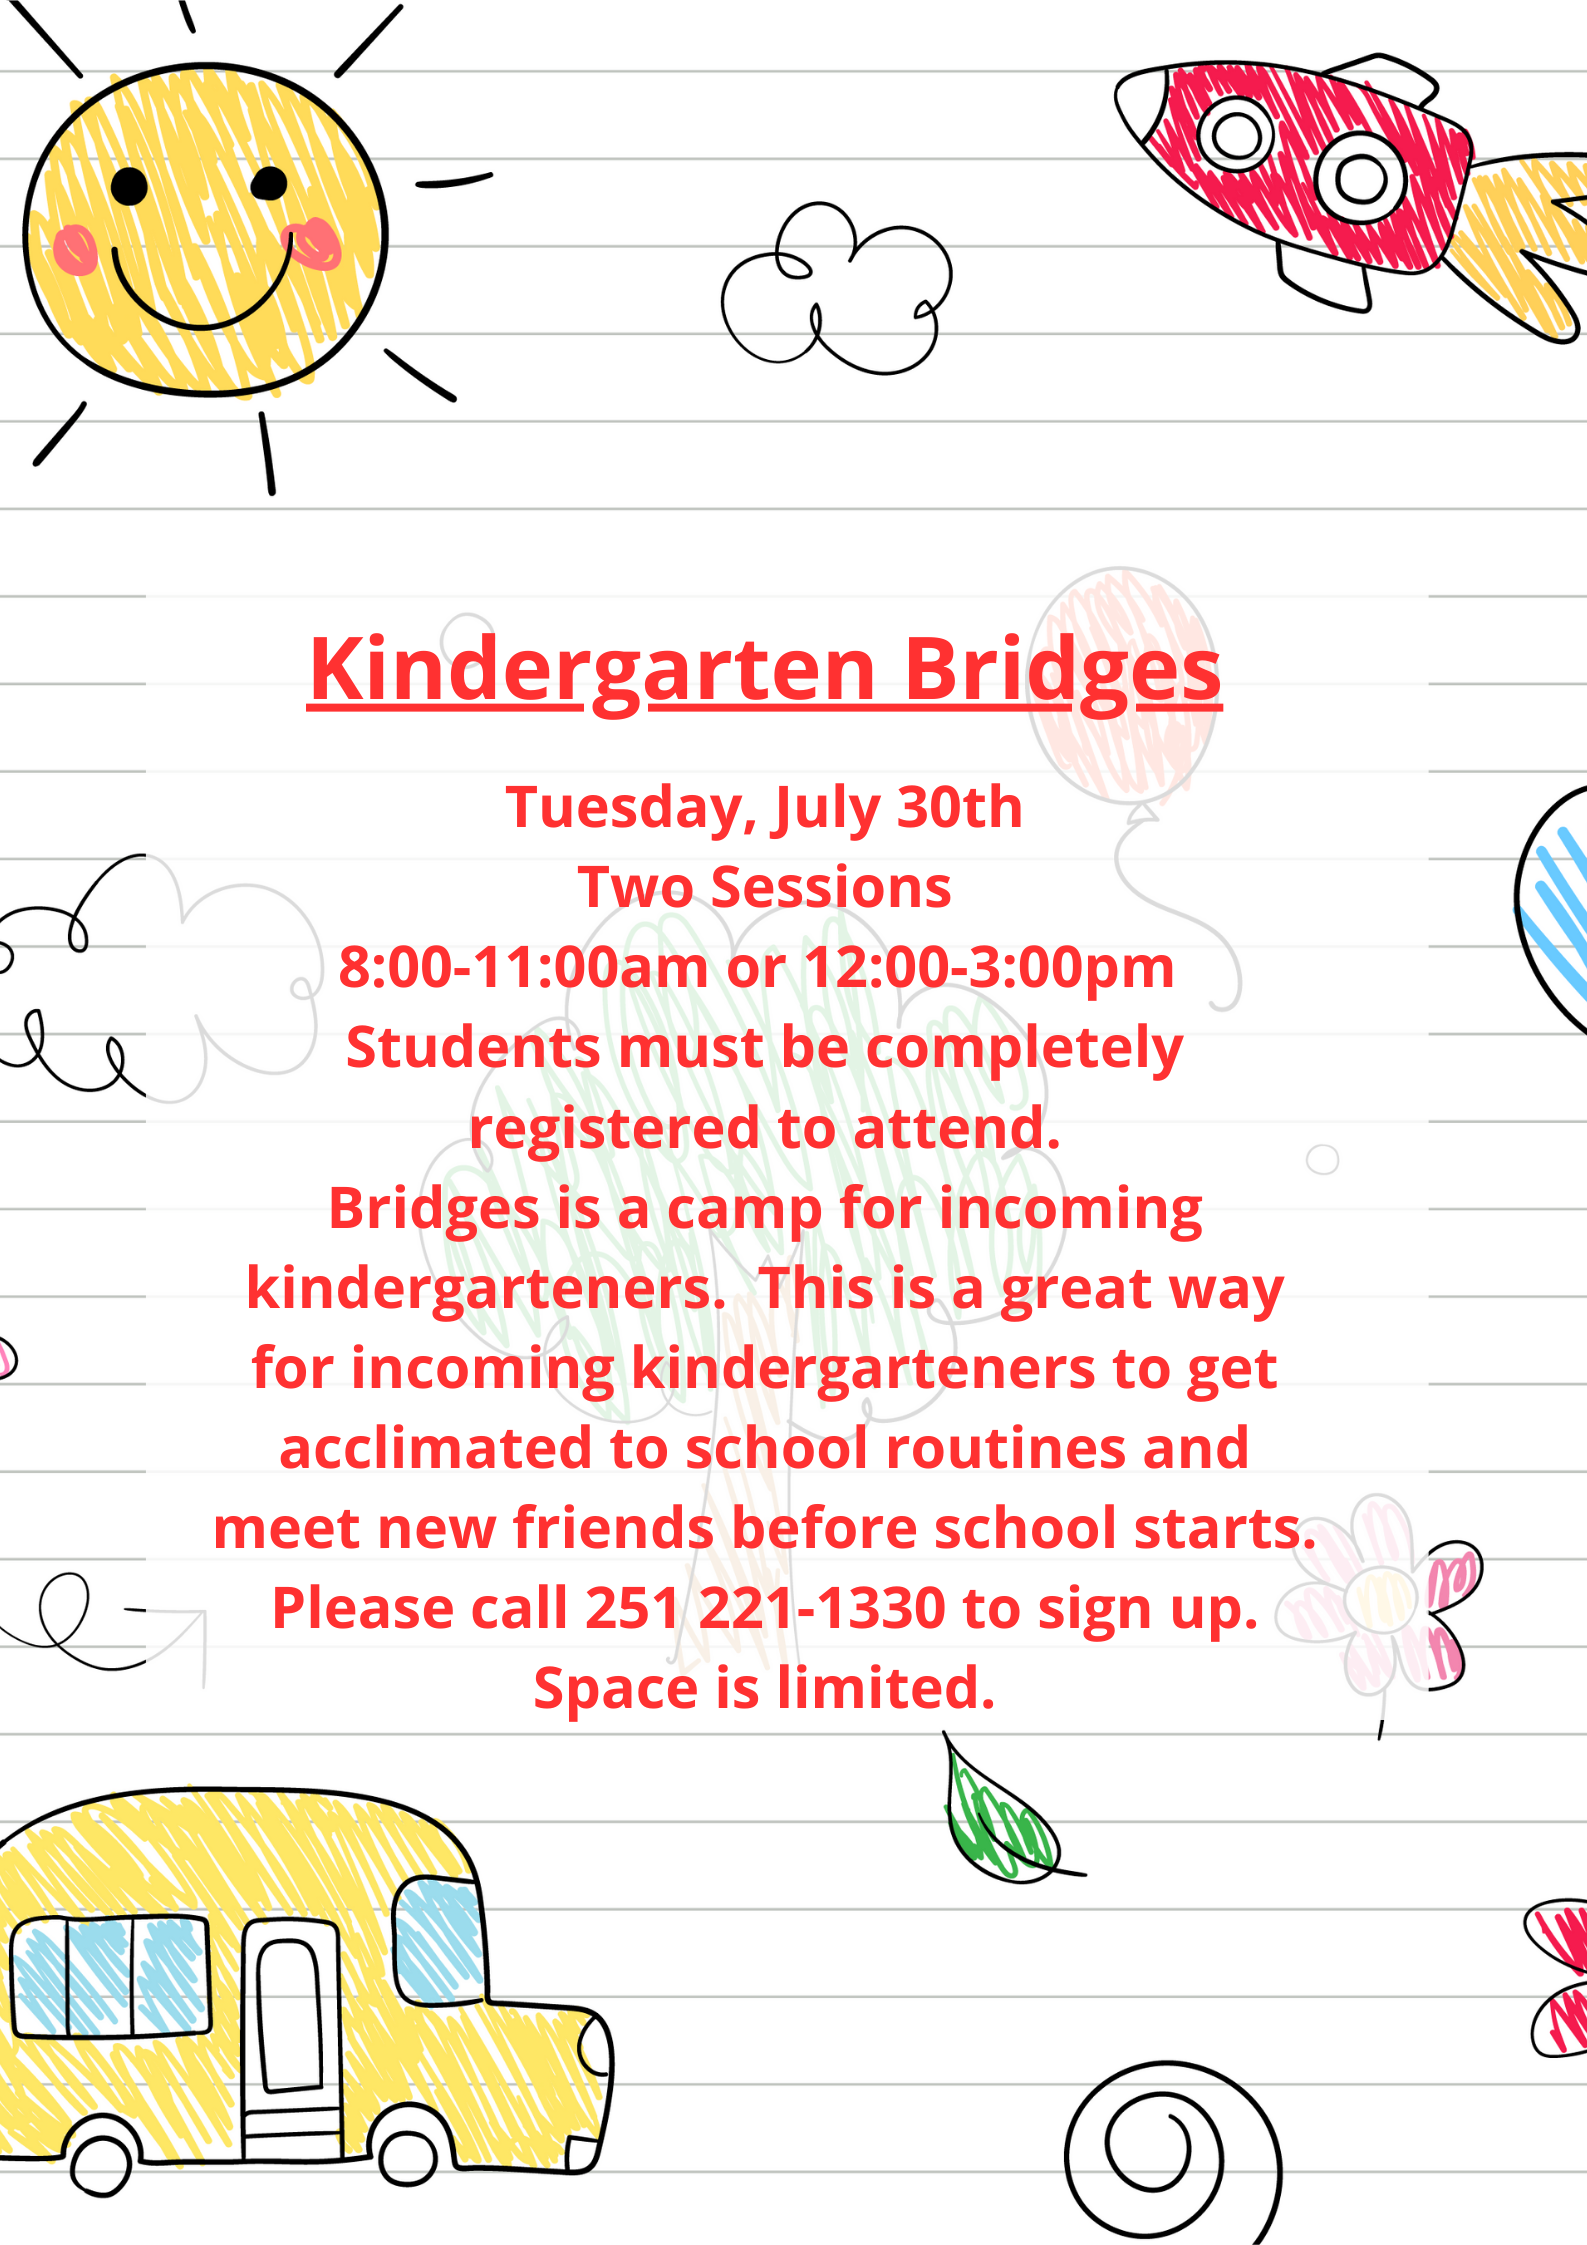 Kindergarten Bridges flyer in English